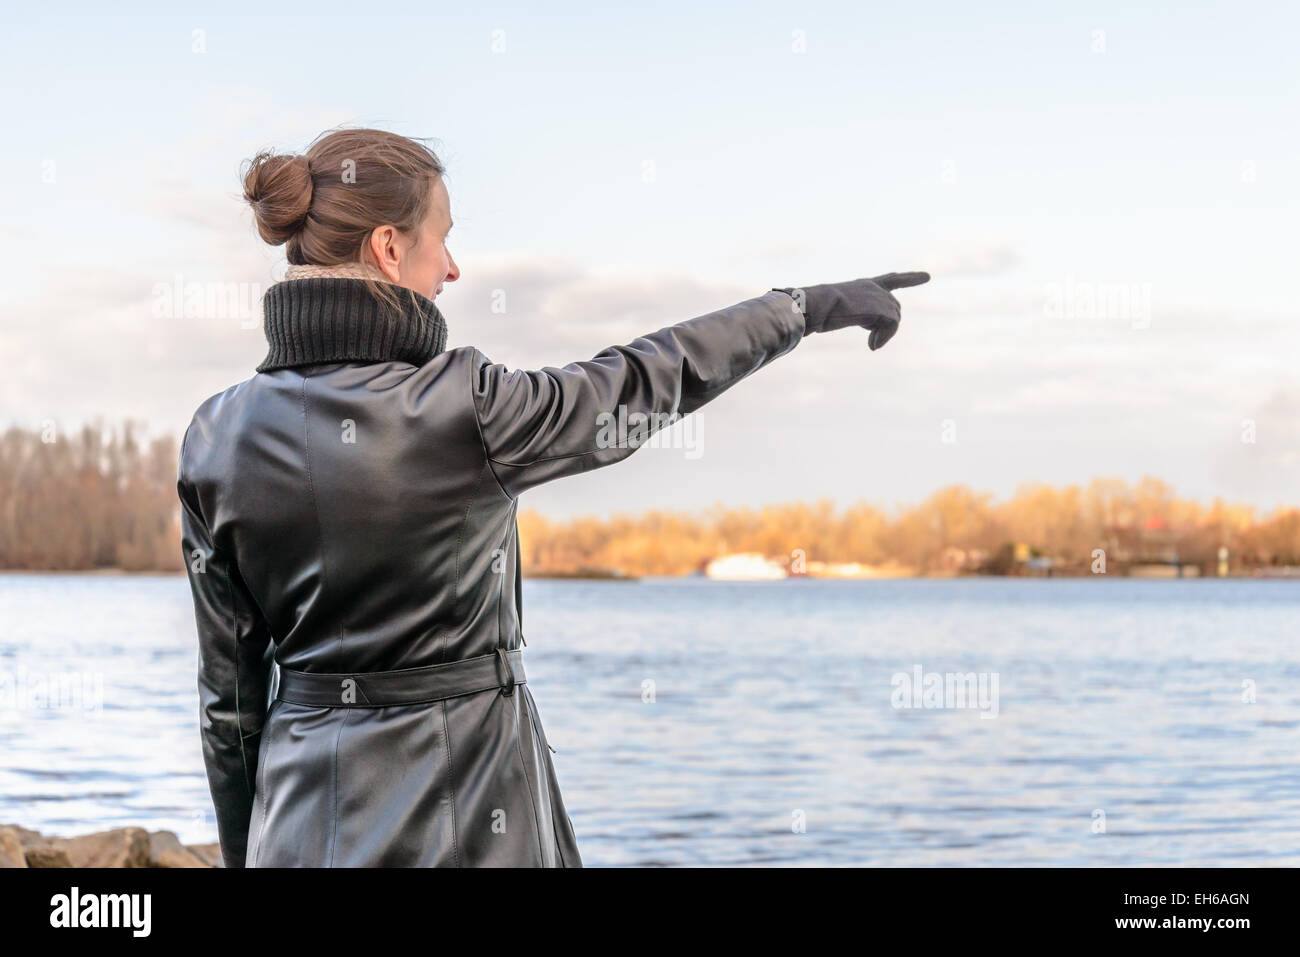 Un adulte avec un chignon et portait un manteau de cuir noir reste près de la rivière et point son doigt pour indiquer quelque chose d'int Banque D'Images